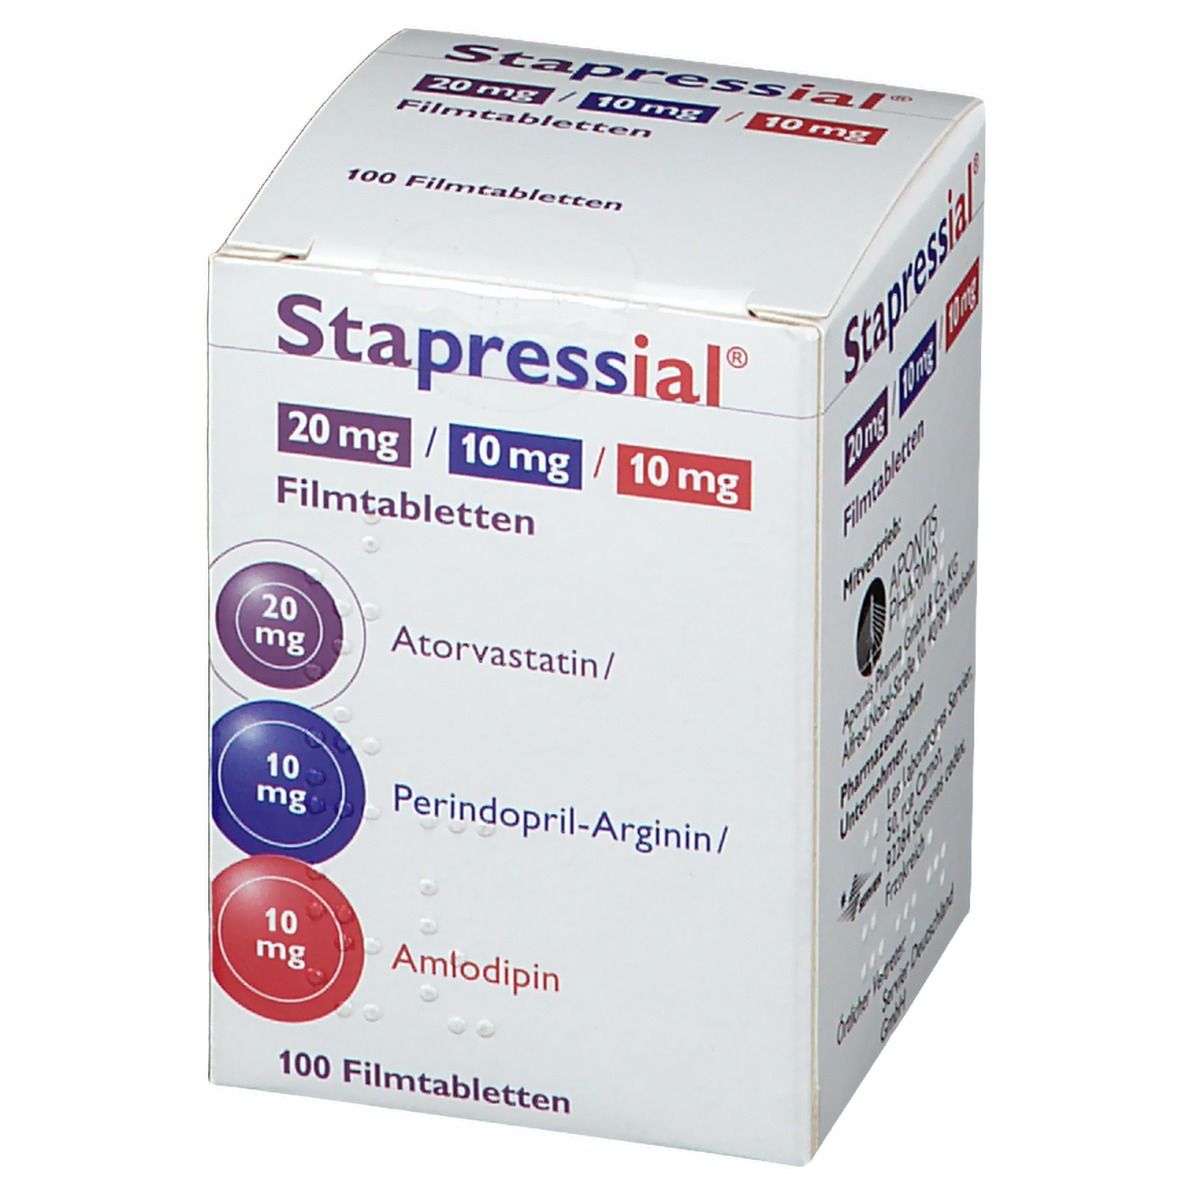 Stapressial® 20 mg/10 mg/10 mg